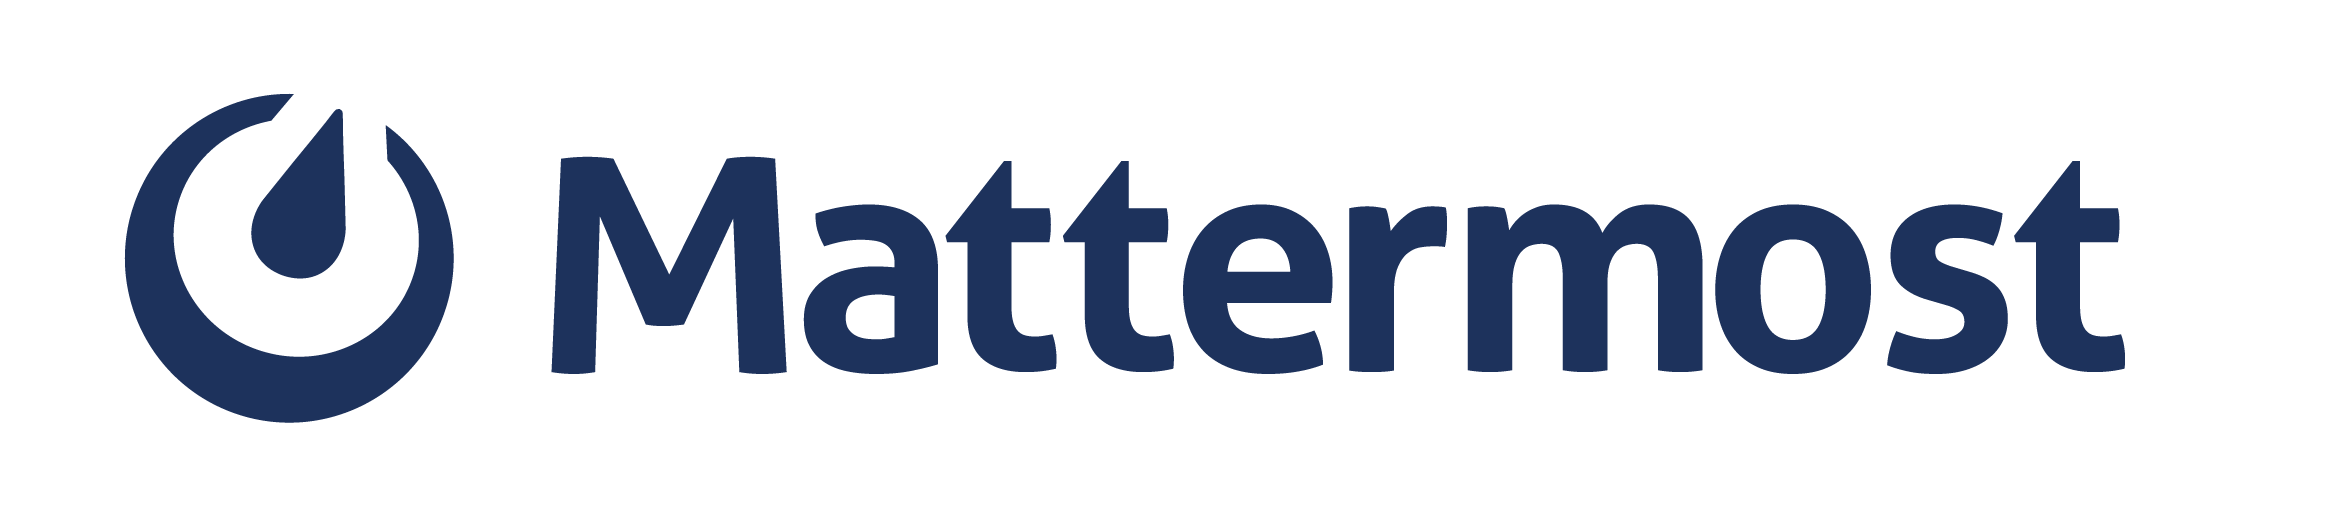 Mattermost lancia nuove partnership per favorire una maggiore innovazione e adozione nel settore pubblico